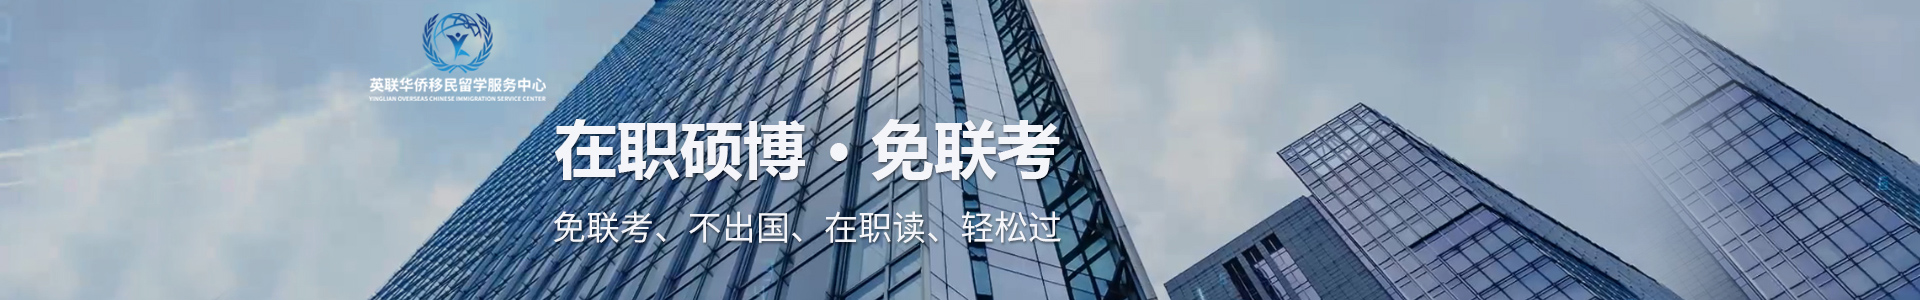 上海英邦联华MBA培训机构